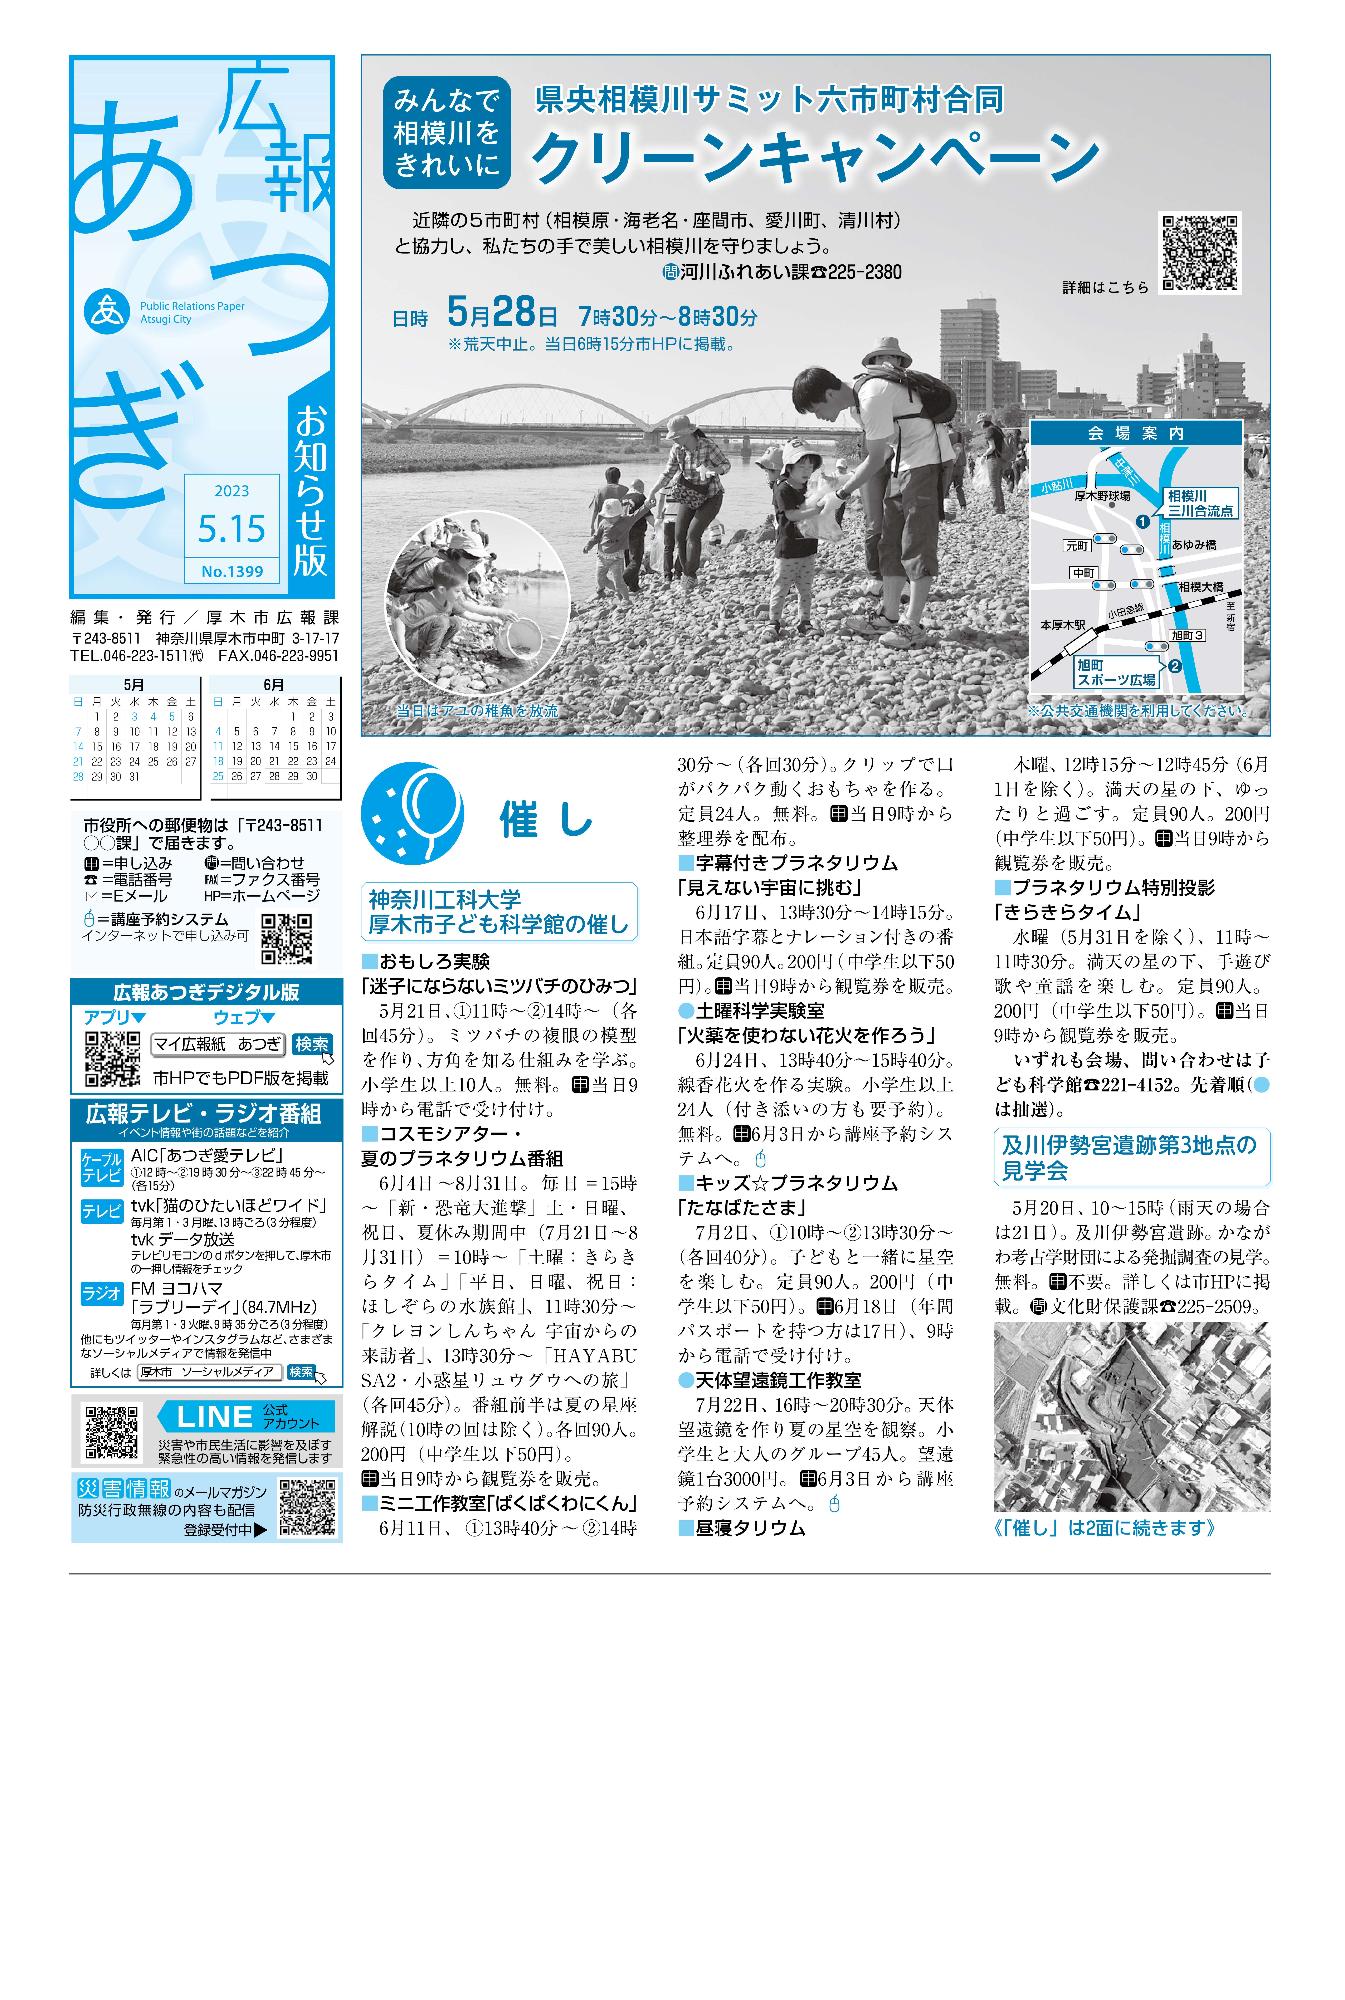 広報あつぎ5月15日号の1面のイメージ画像